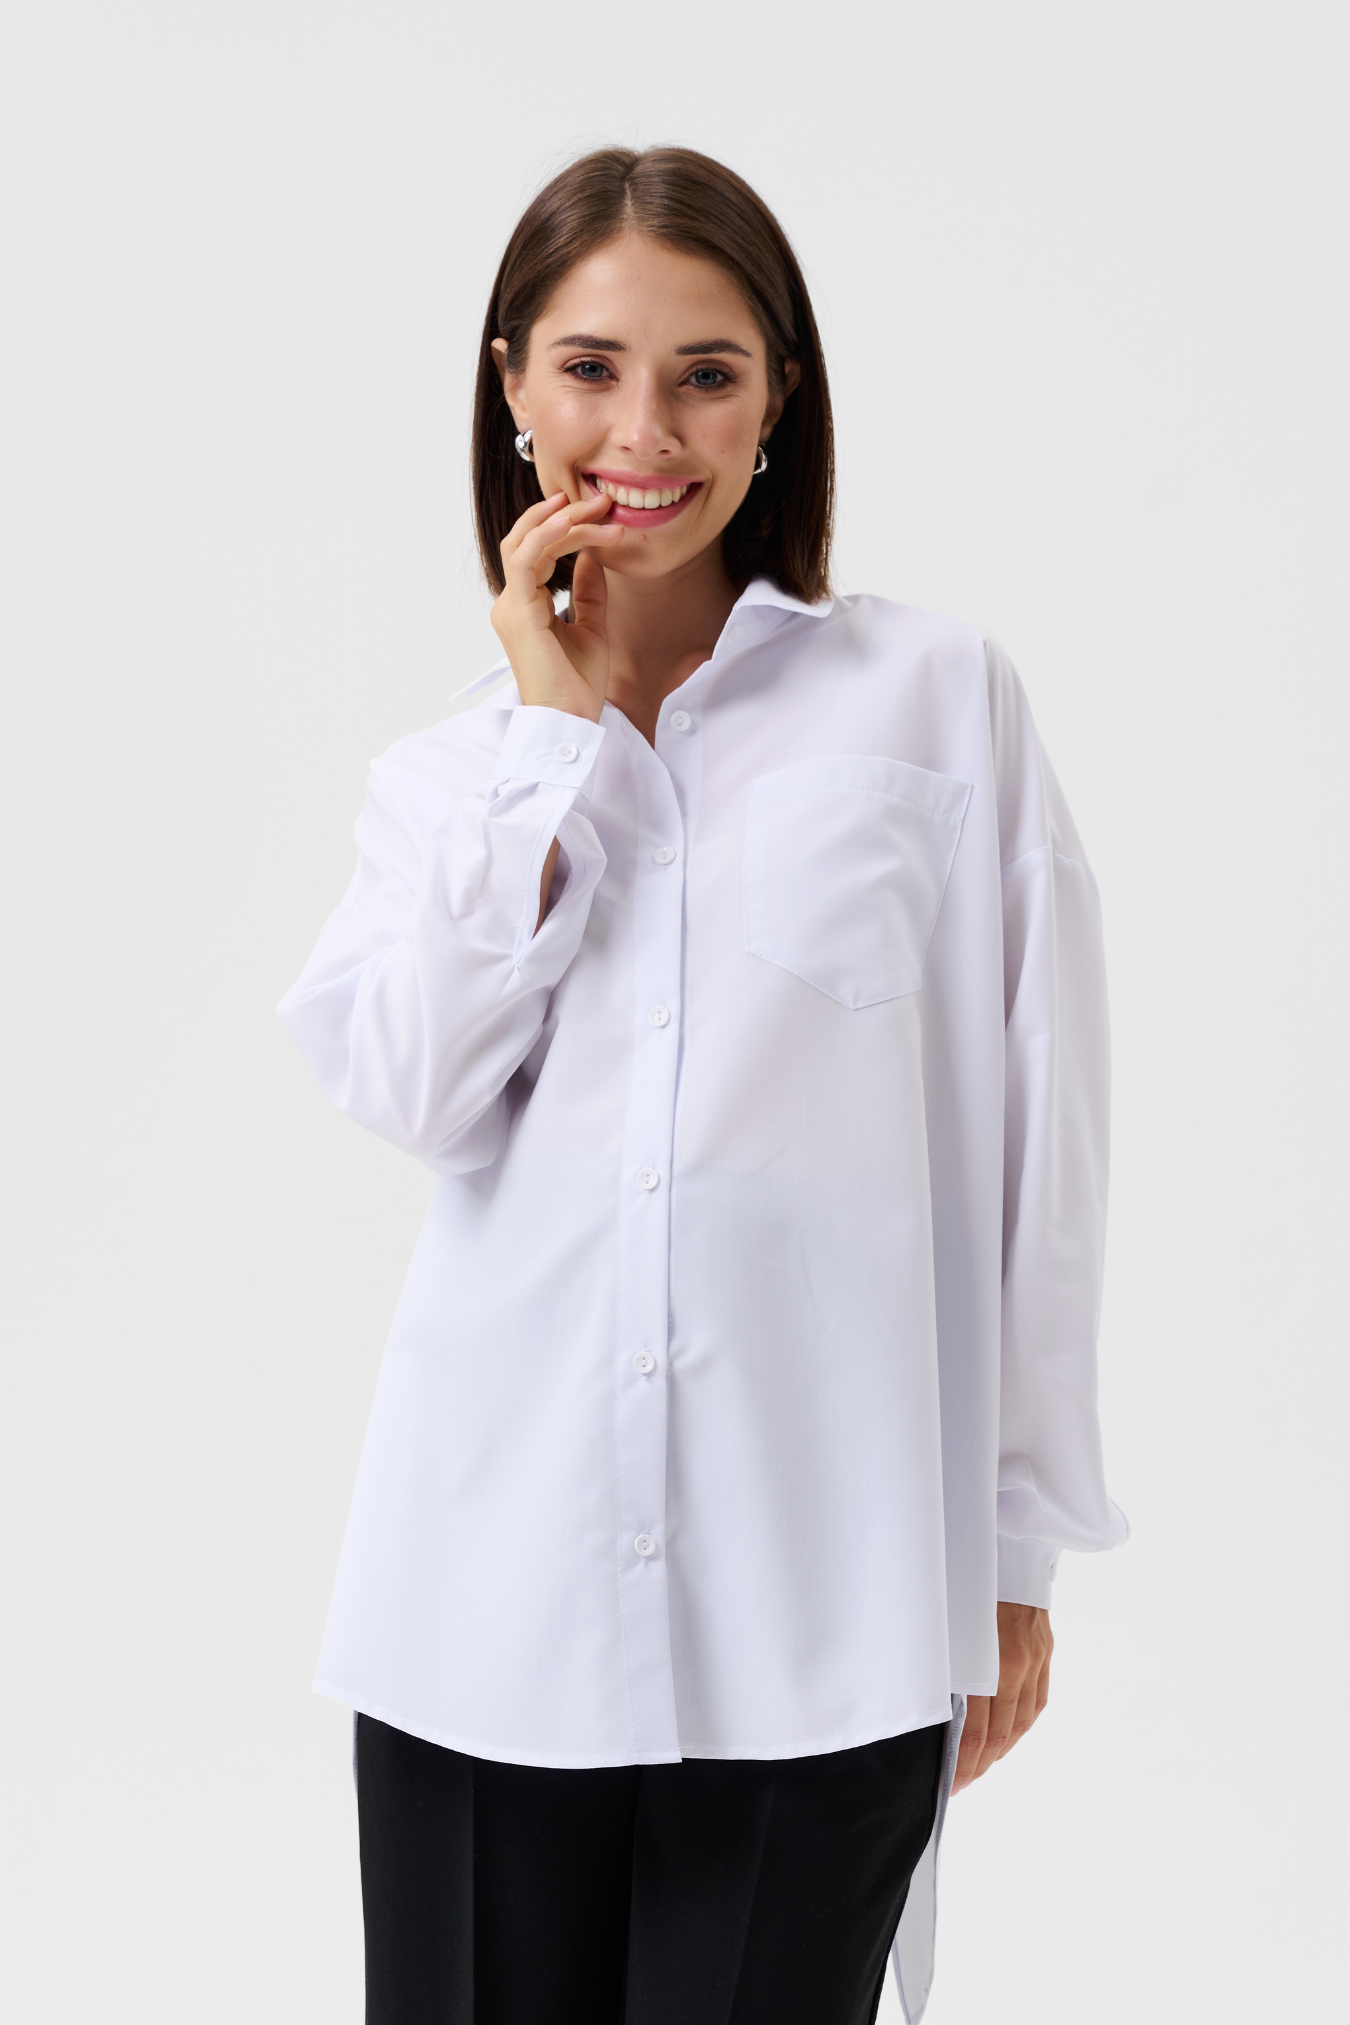 Рубашка для беременных женщин белая офисная женская блузка блуза одежда для будущих мам / Happy Moms